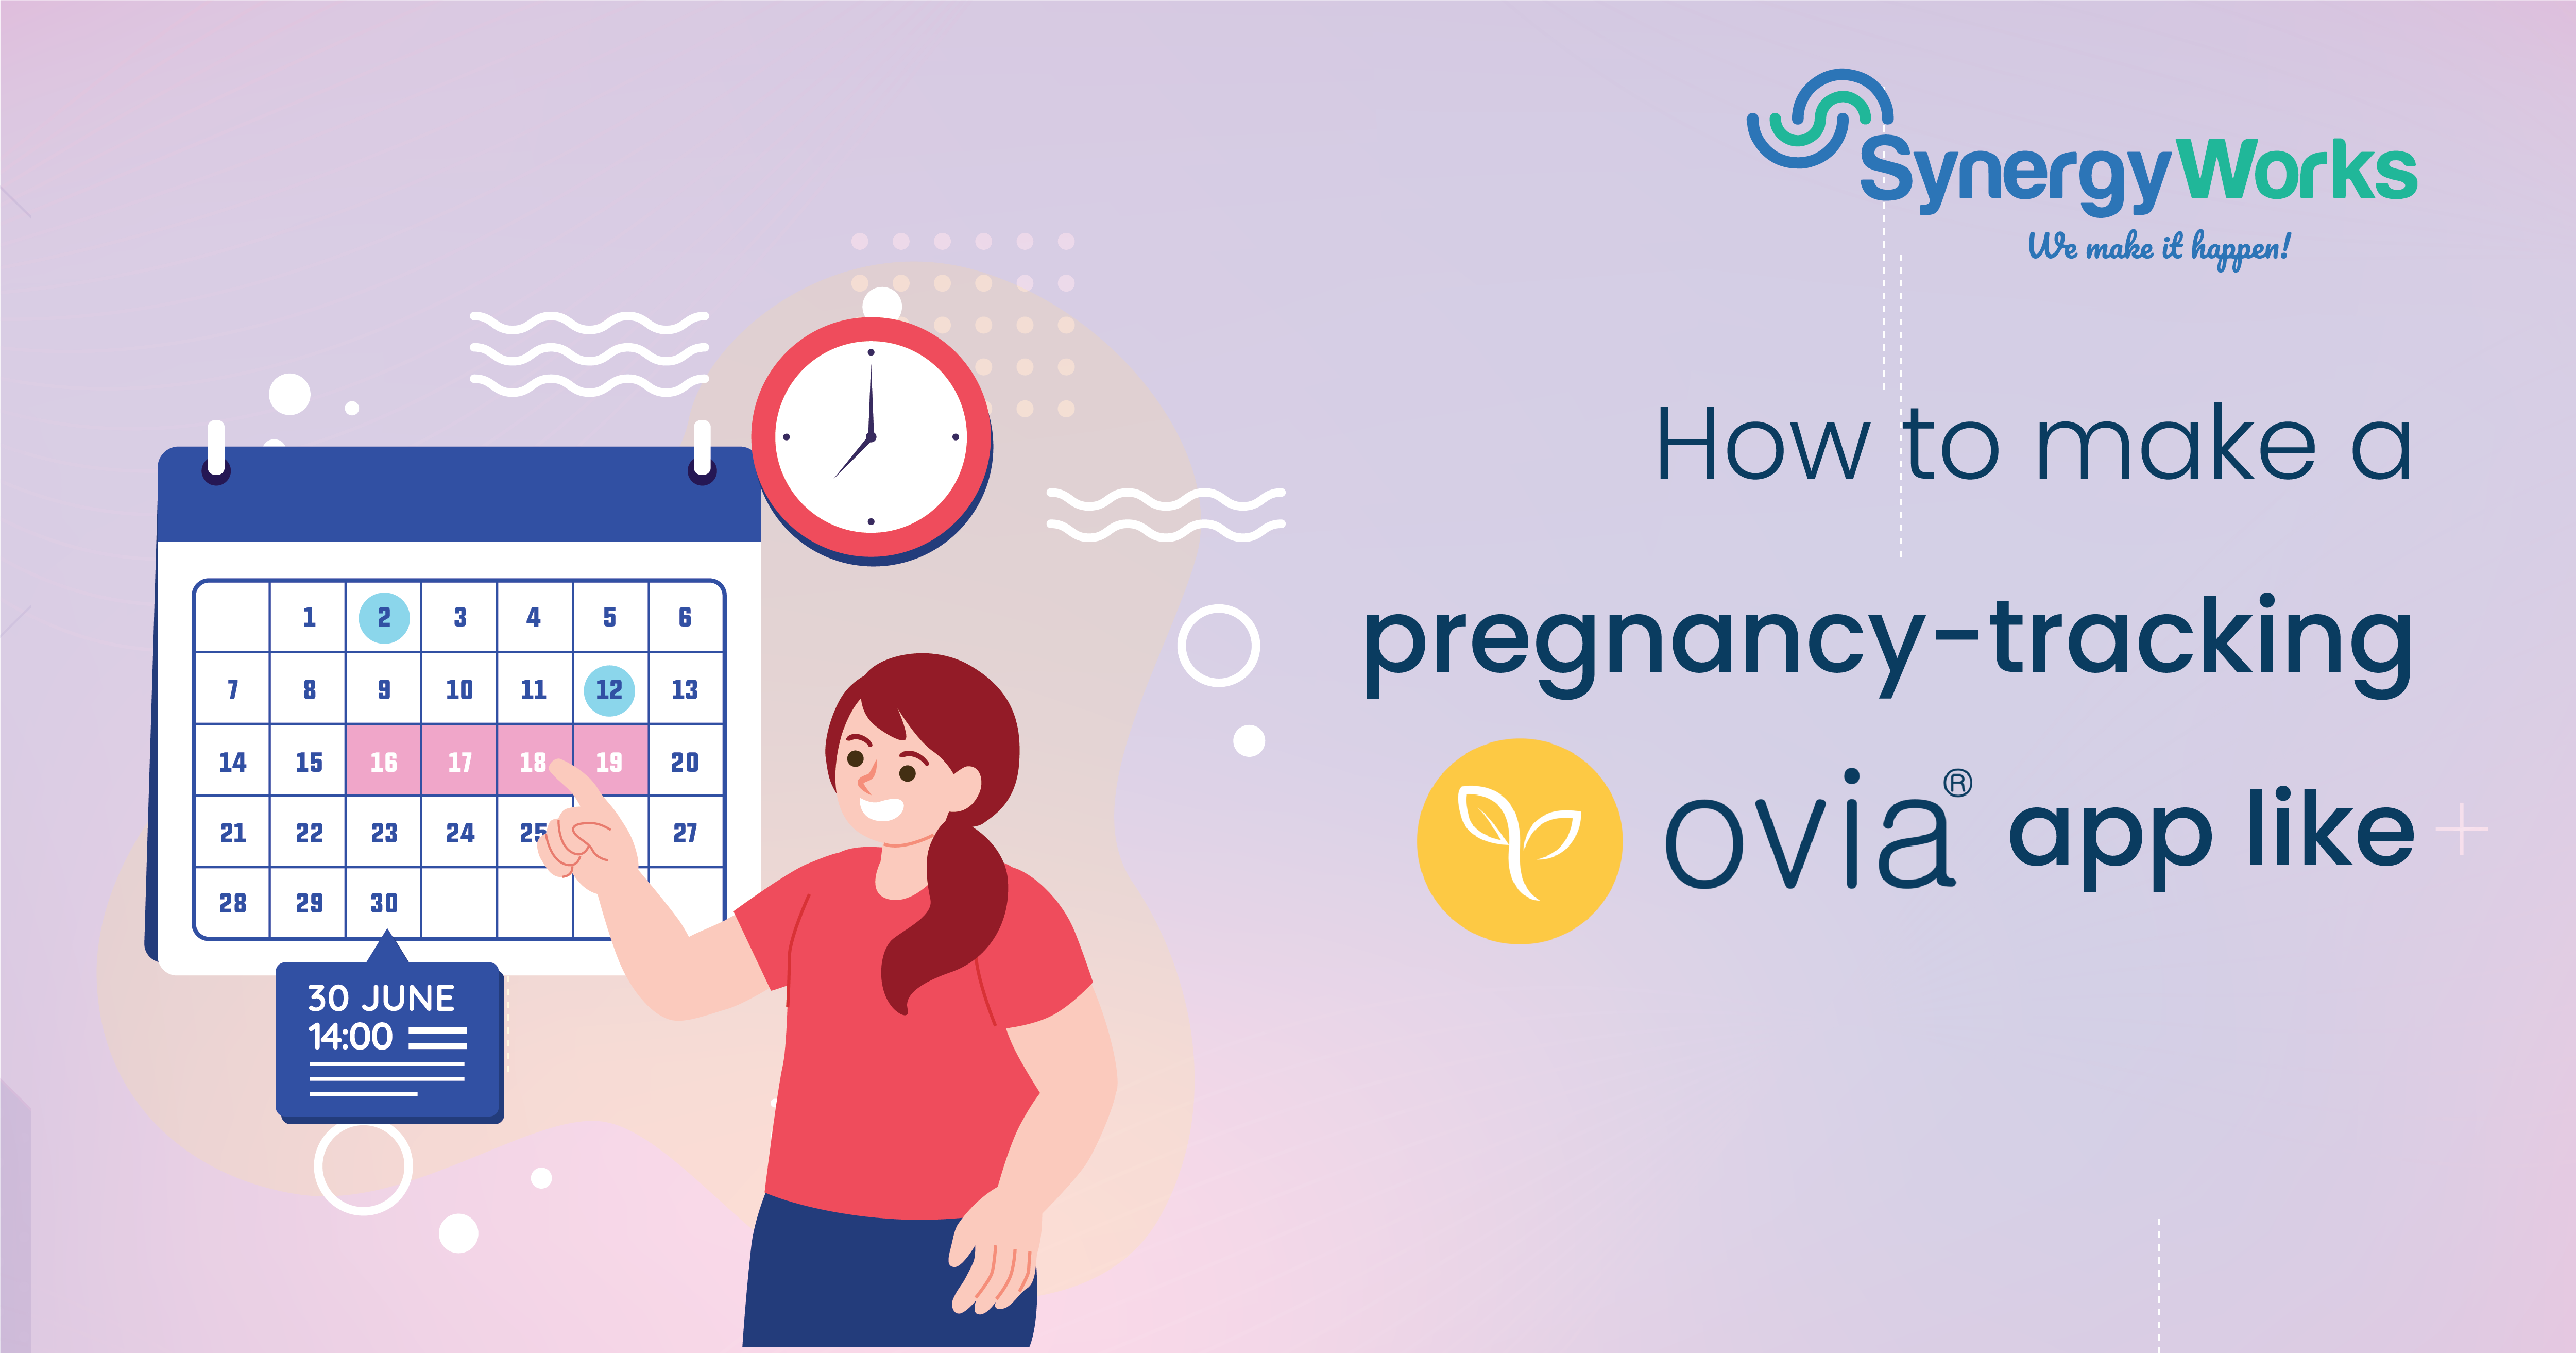 How to Make a Pregnancy-Tracking App Like Ovia?